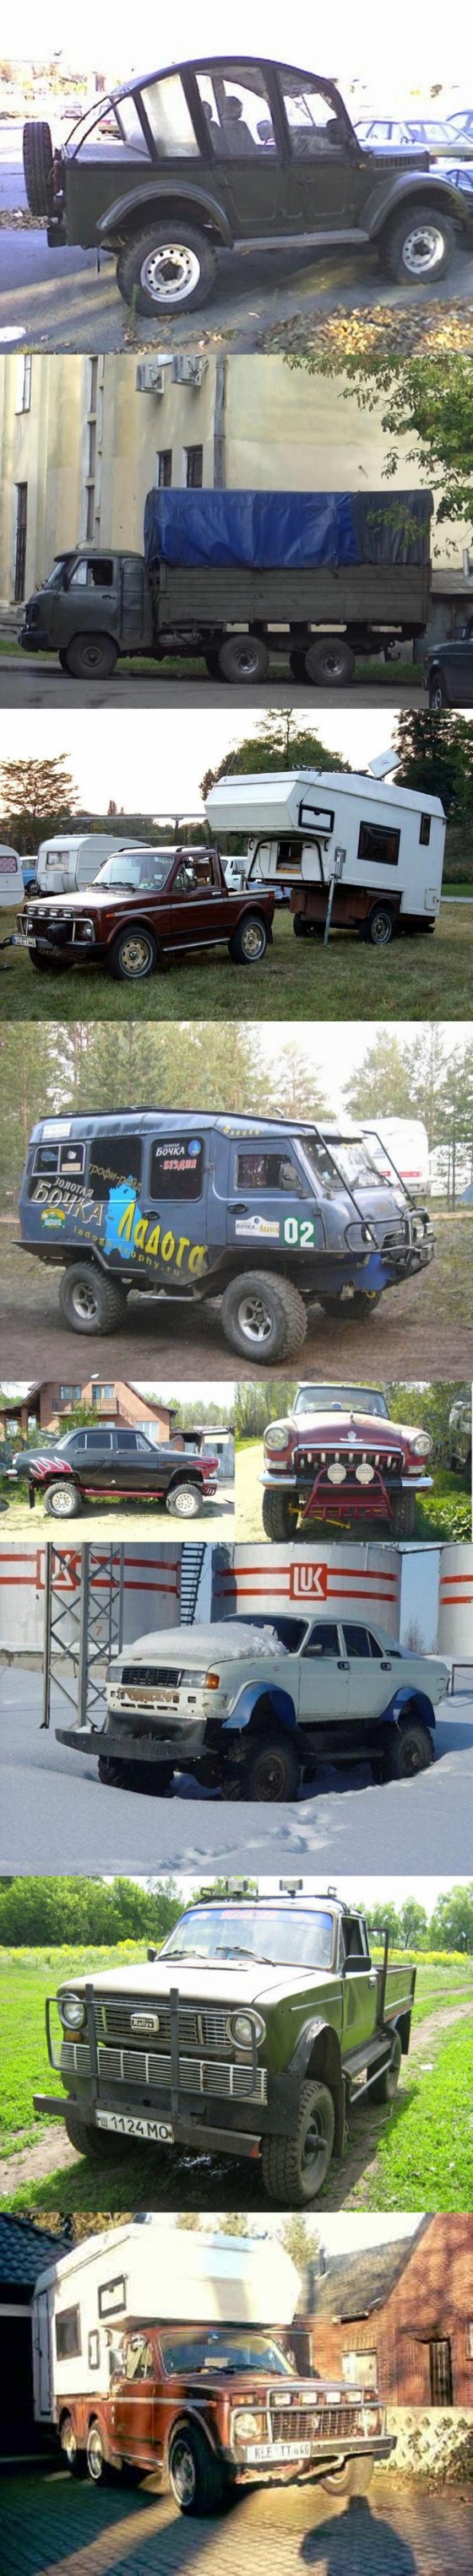 საბჭოთა და რუსული წარმოების მანქანების "მოდერნიზება" რუსულად. კოლაჟი